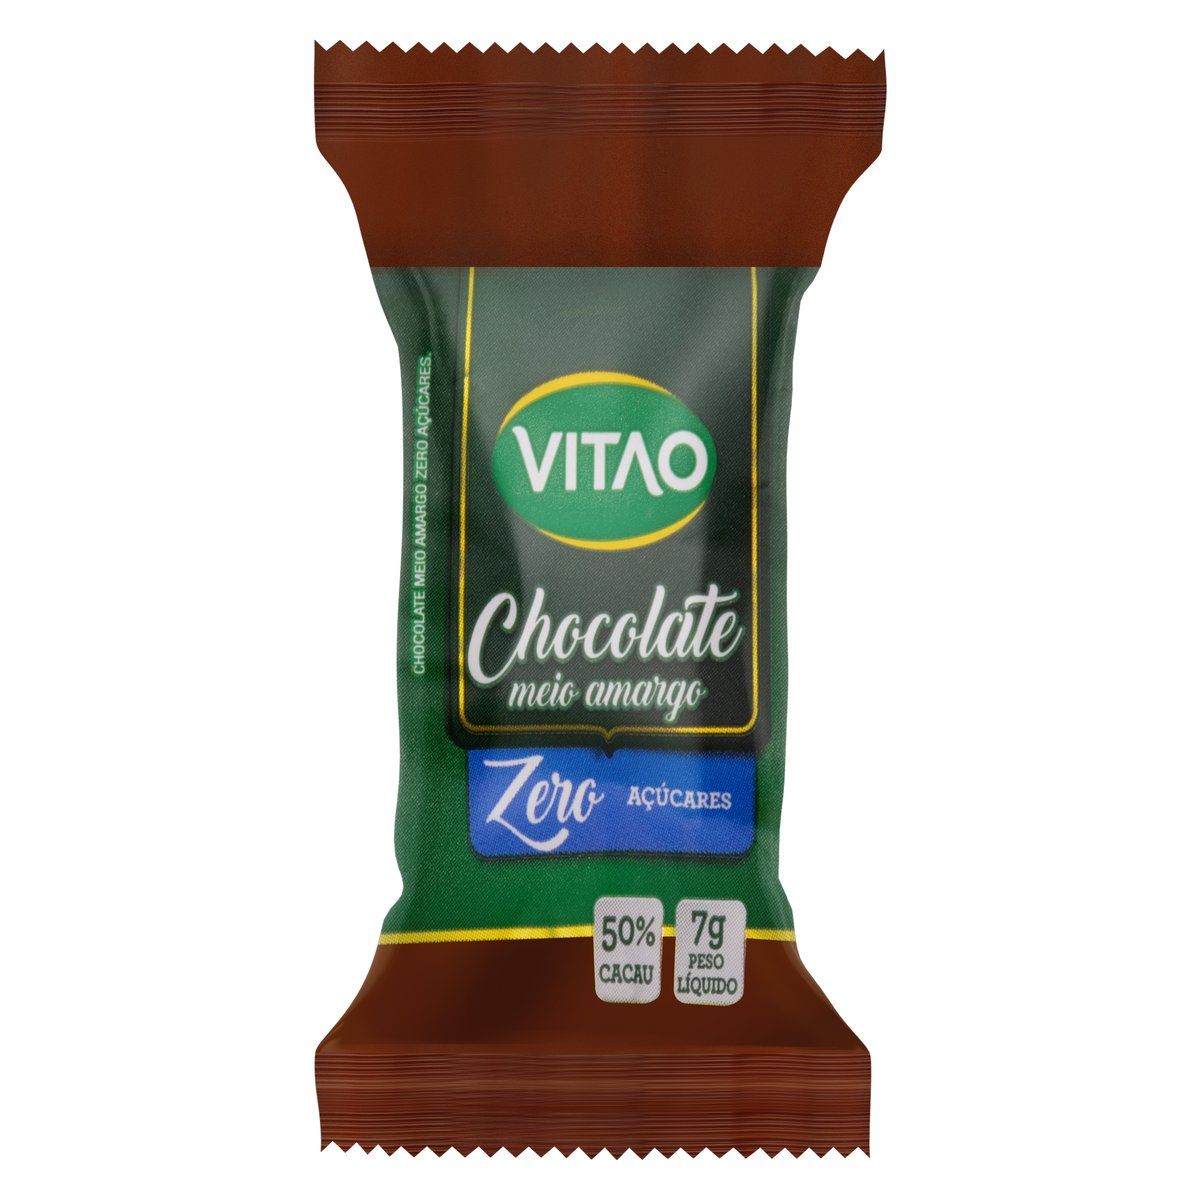 Chocolate Meio Amargo 50% Cacau Zero Açúcar Vitao Pacote 7g